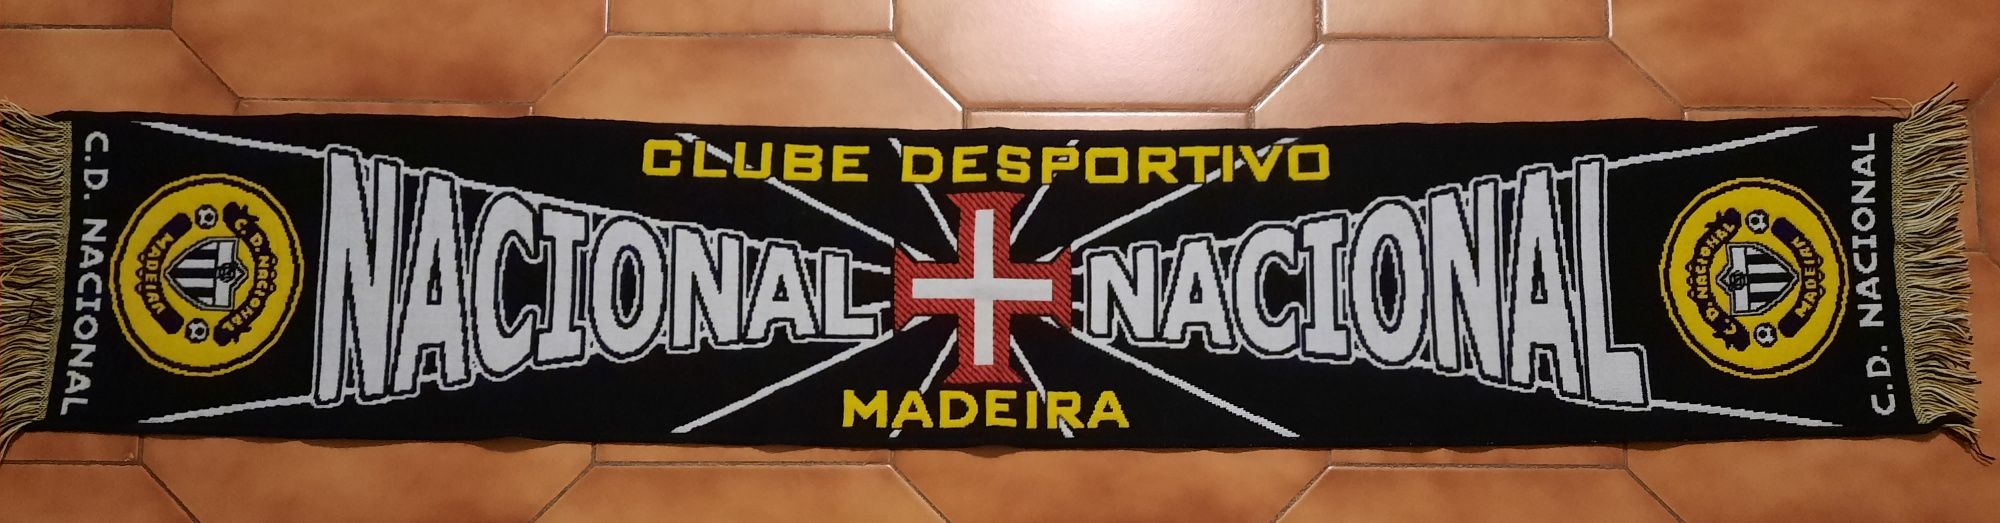 Cachecol Nacional da Madeira Futebol Portugal